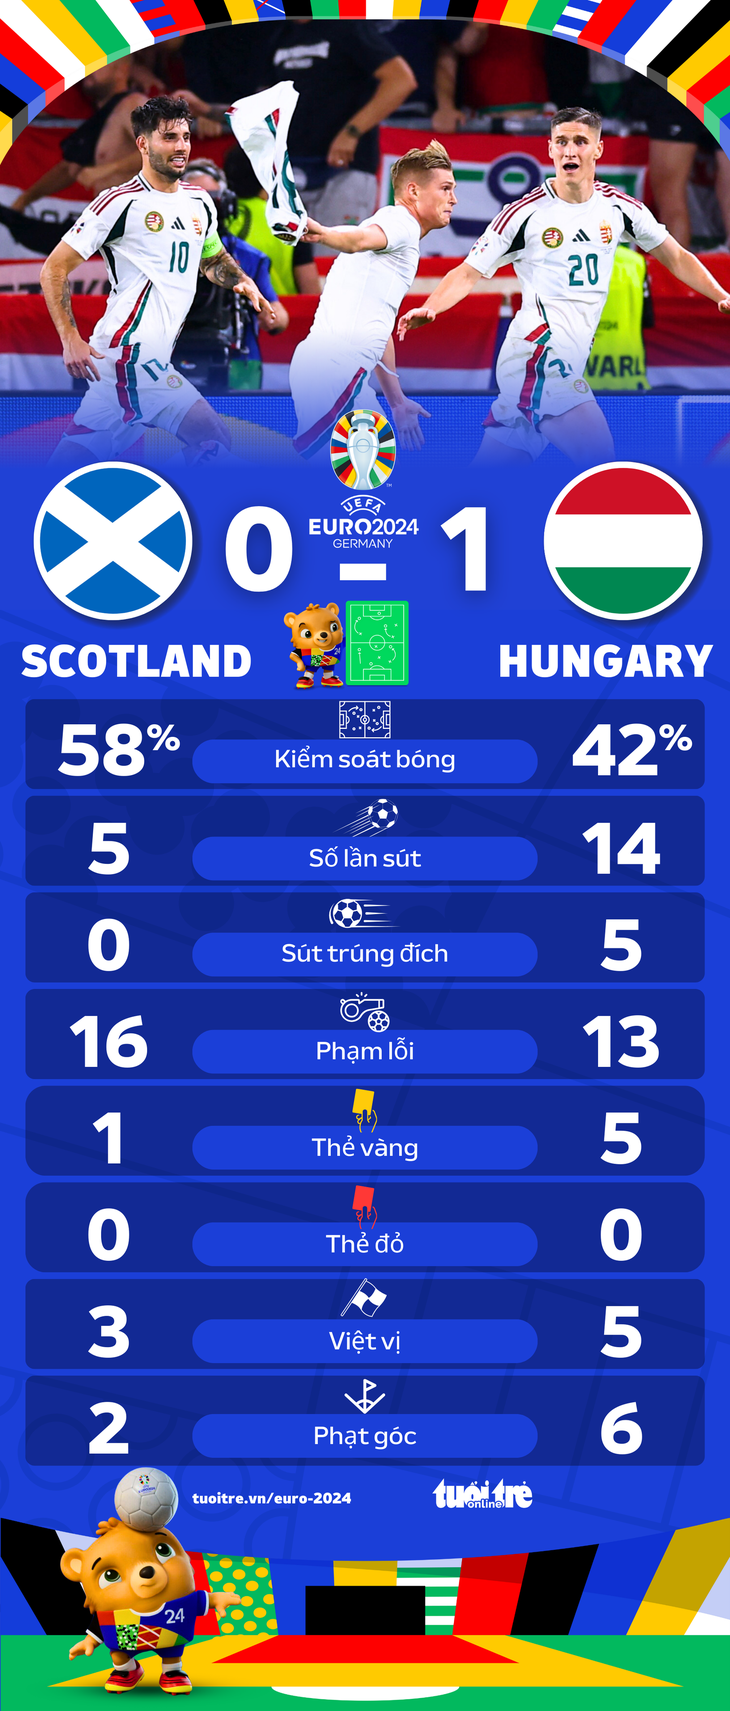 Thông số thống kê trận đấu giữa tuyển Scotland và tuyển Hungary - Đồ họa: AN BÌNH